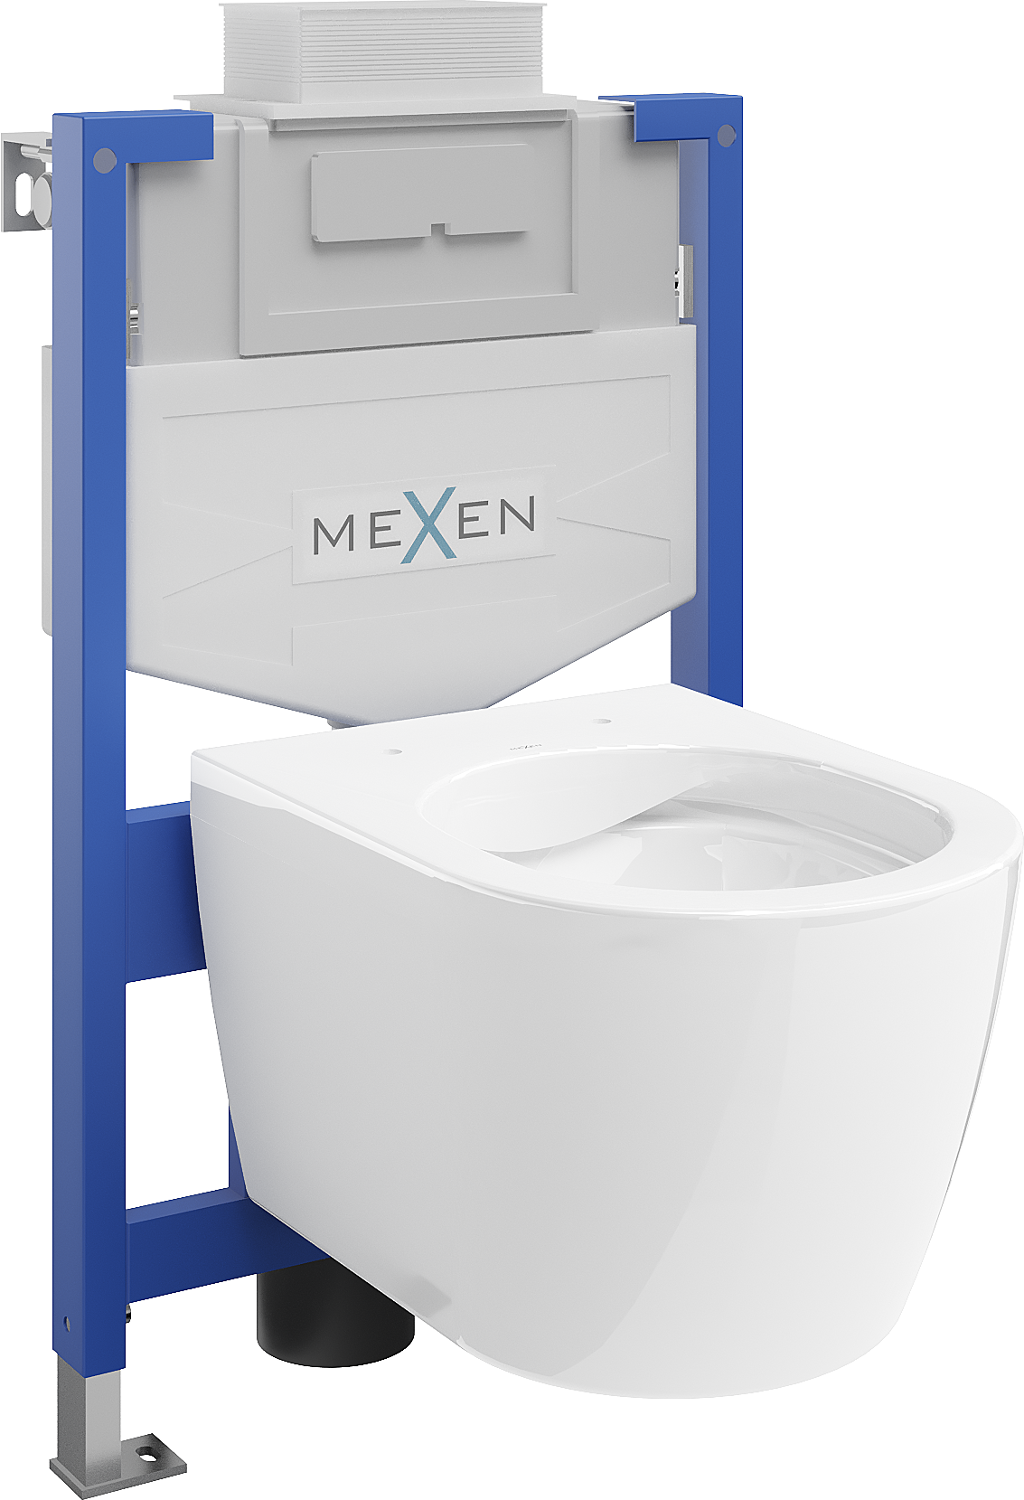 Mexen zestaw podtynkowy WC stelaż Fenix XS-U z miską WC Carmen, biały - 6853388XX00